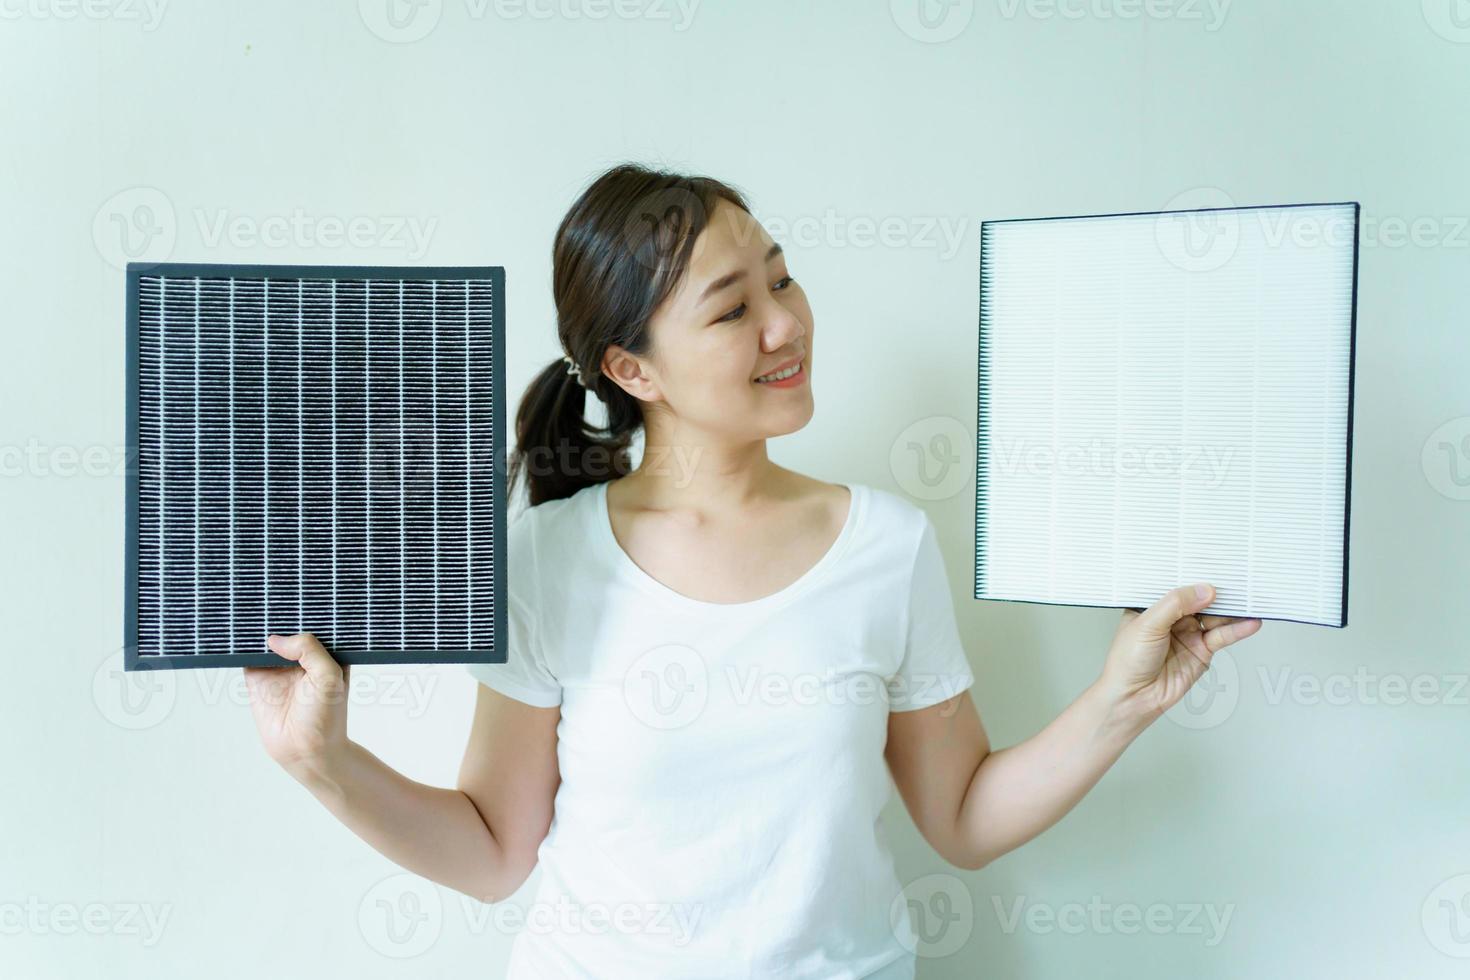 jovem asiática mostrando um filtro de purificador de ar usado e novo, comparando entre filtro de ar novo e sujo usado. foto